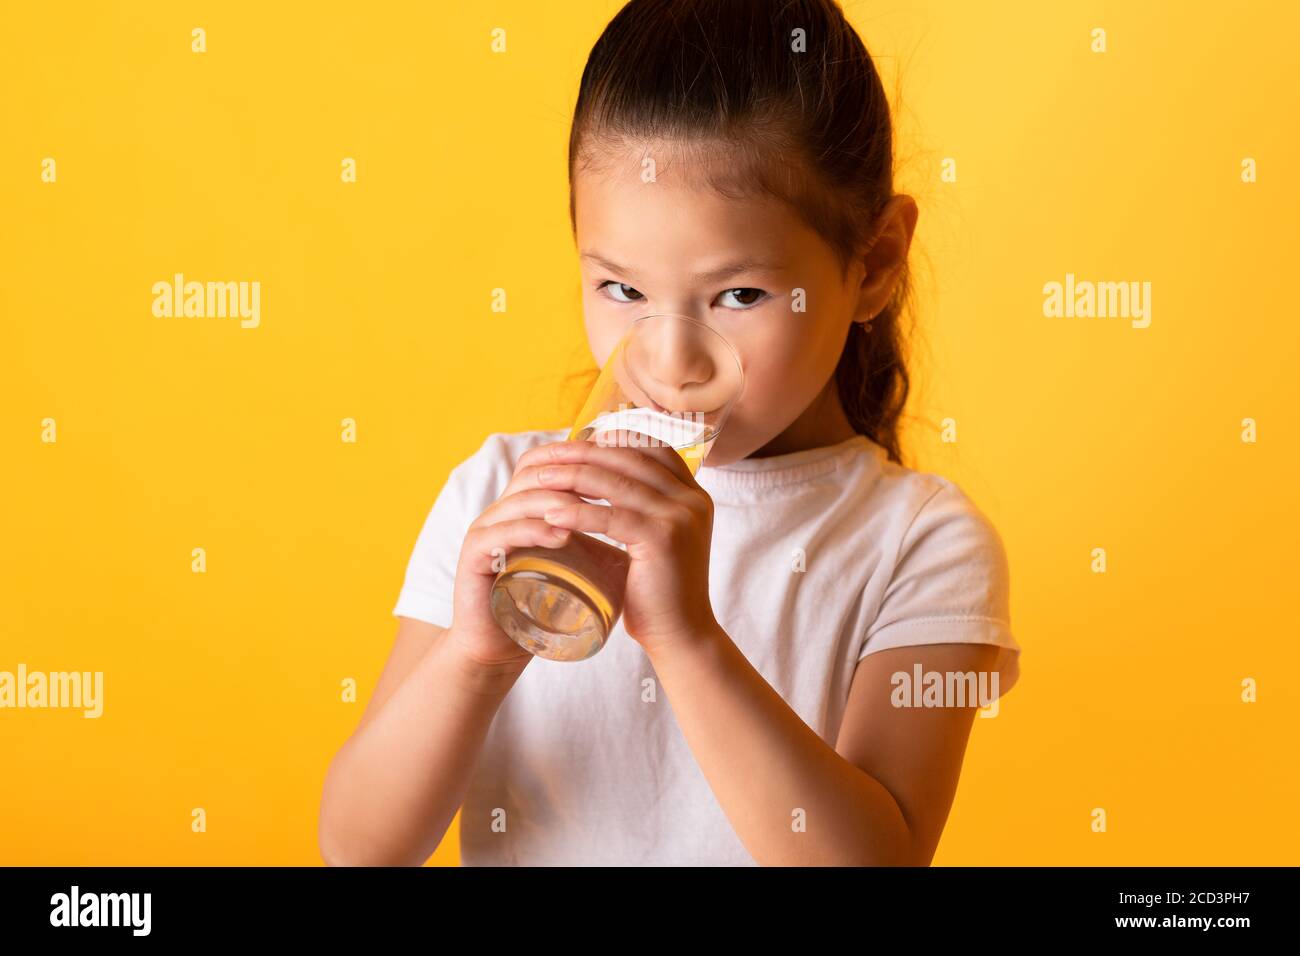 Portrait d'un enfant asiatique qui boit de l'eau douce Banque D'Images